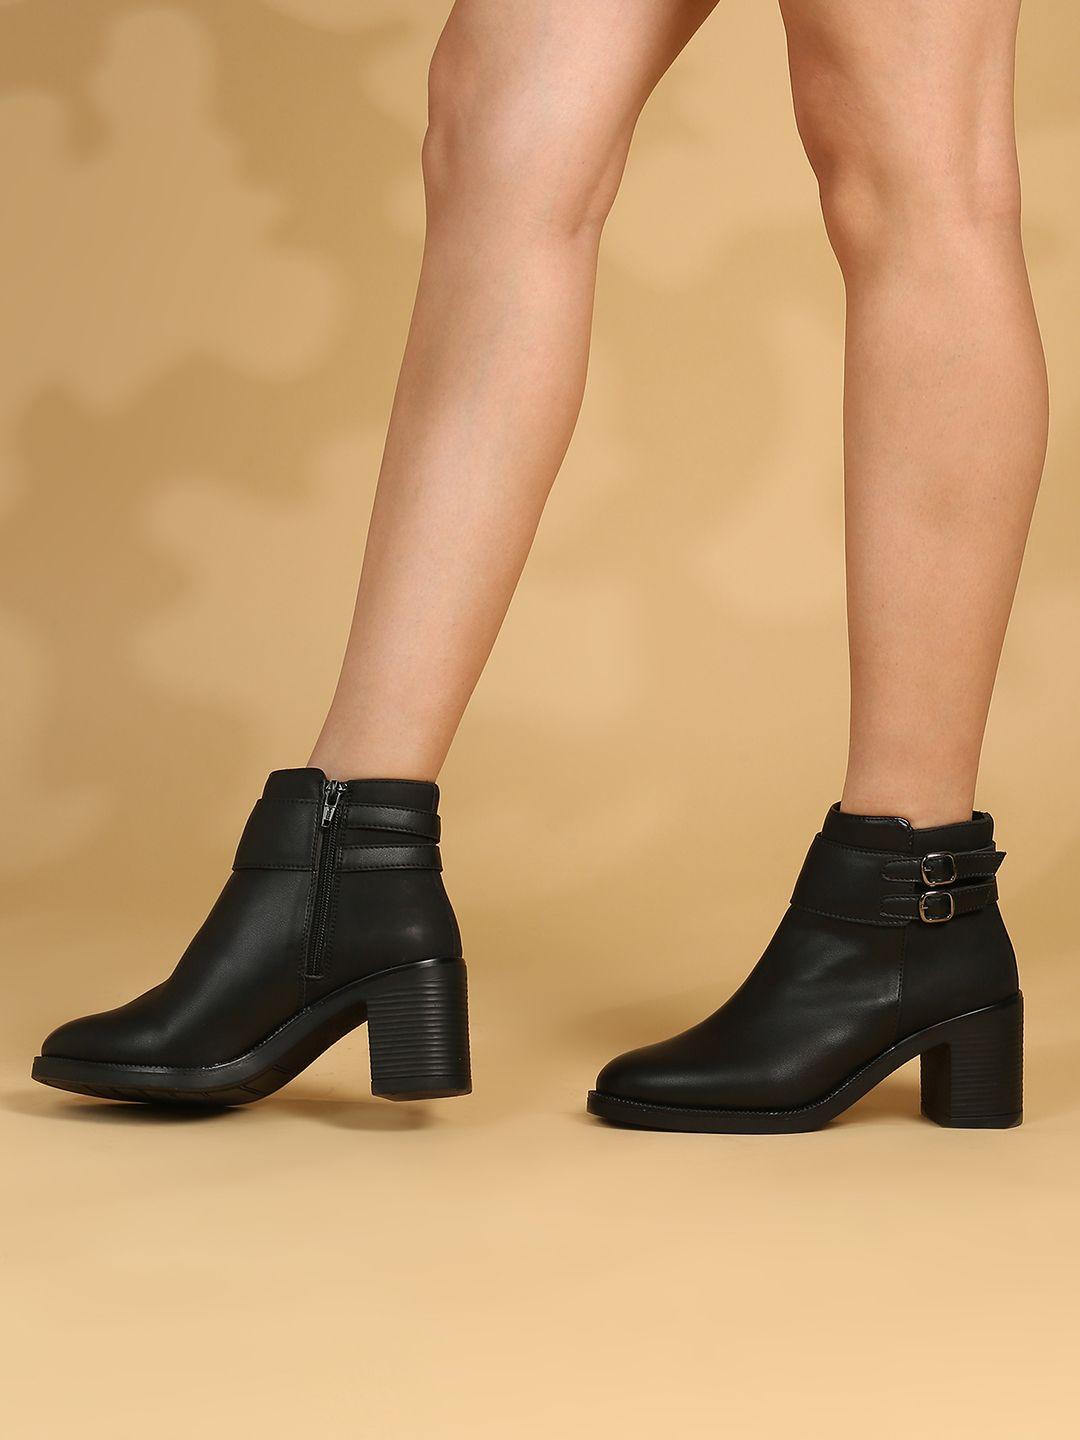 inc 5 women block heel boots with buckle detail